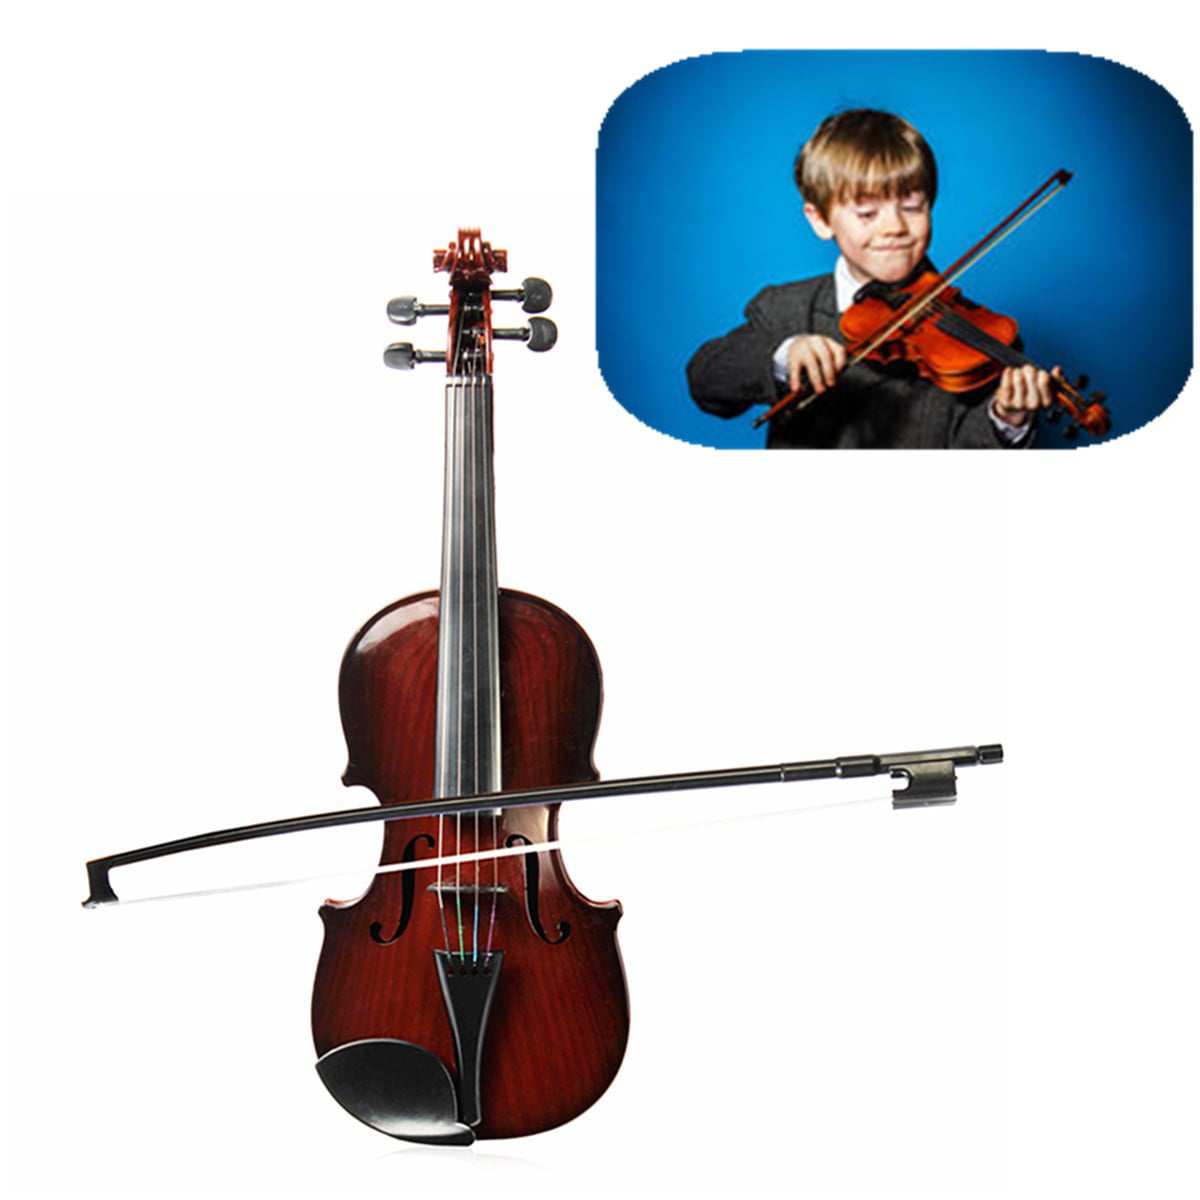 Купить скрипку для начинающих. Скрипка для начинающих детей. Музыкальная игрушка "скрипка". Музыкальные инструменты фото для детей. Скрипка для детей 9 лет мальчику на день рождения.